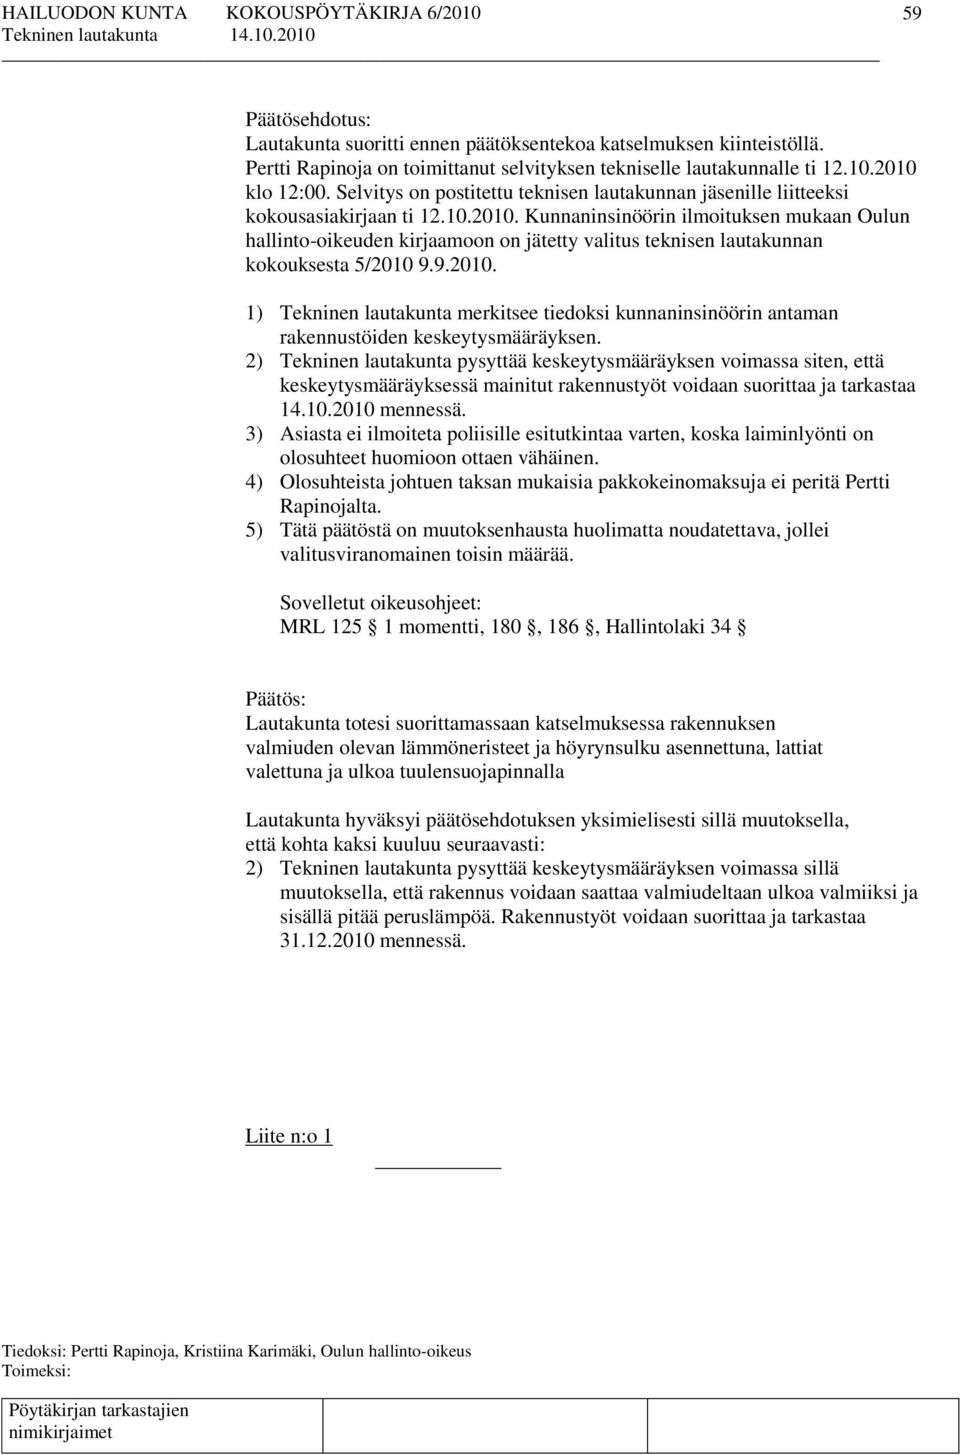 Kunnaninsinöörin ilmoituksen mukaan Oulun hallinto-oikeuden kirjaamoon on jätetty valitus teknisen lautakunnan kokouksesta 5/2010 